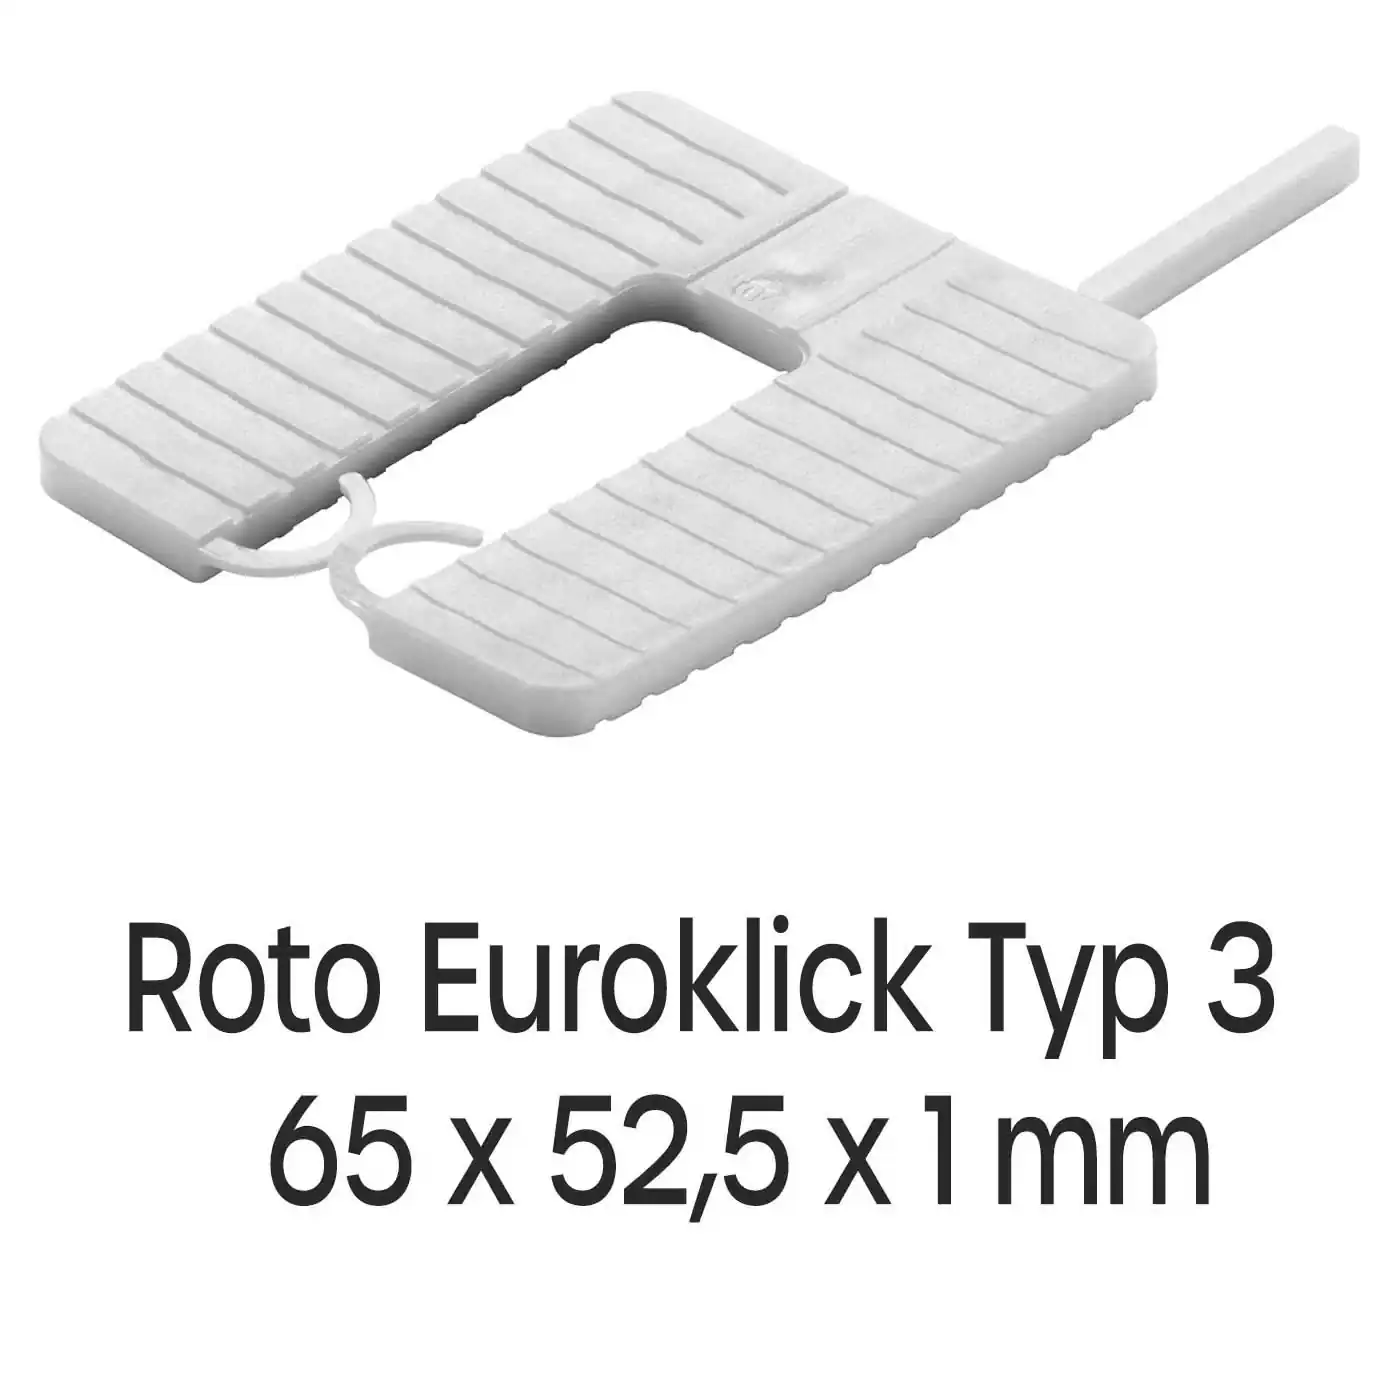 Distanzplatten Roto Euroklick Typ 2 65 x 52,5 x 1 mm 1000 Stück